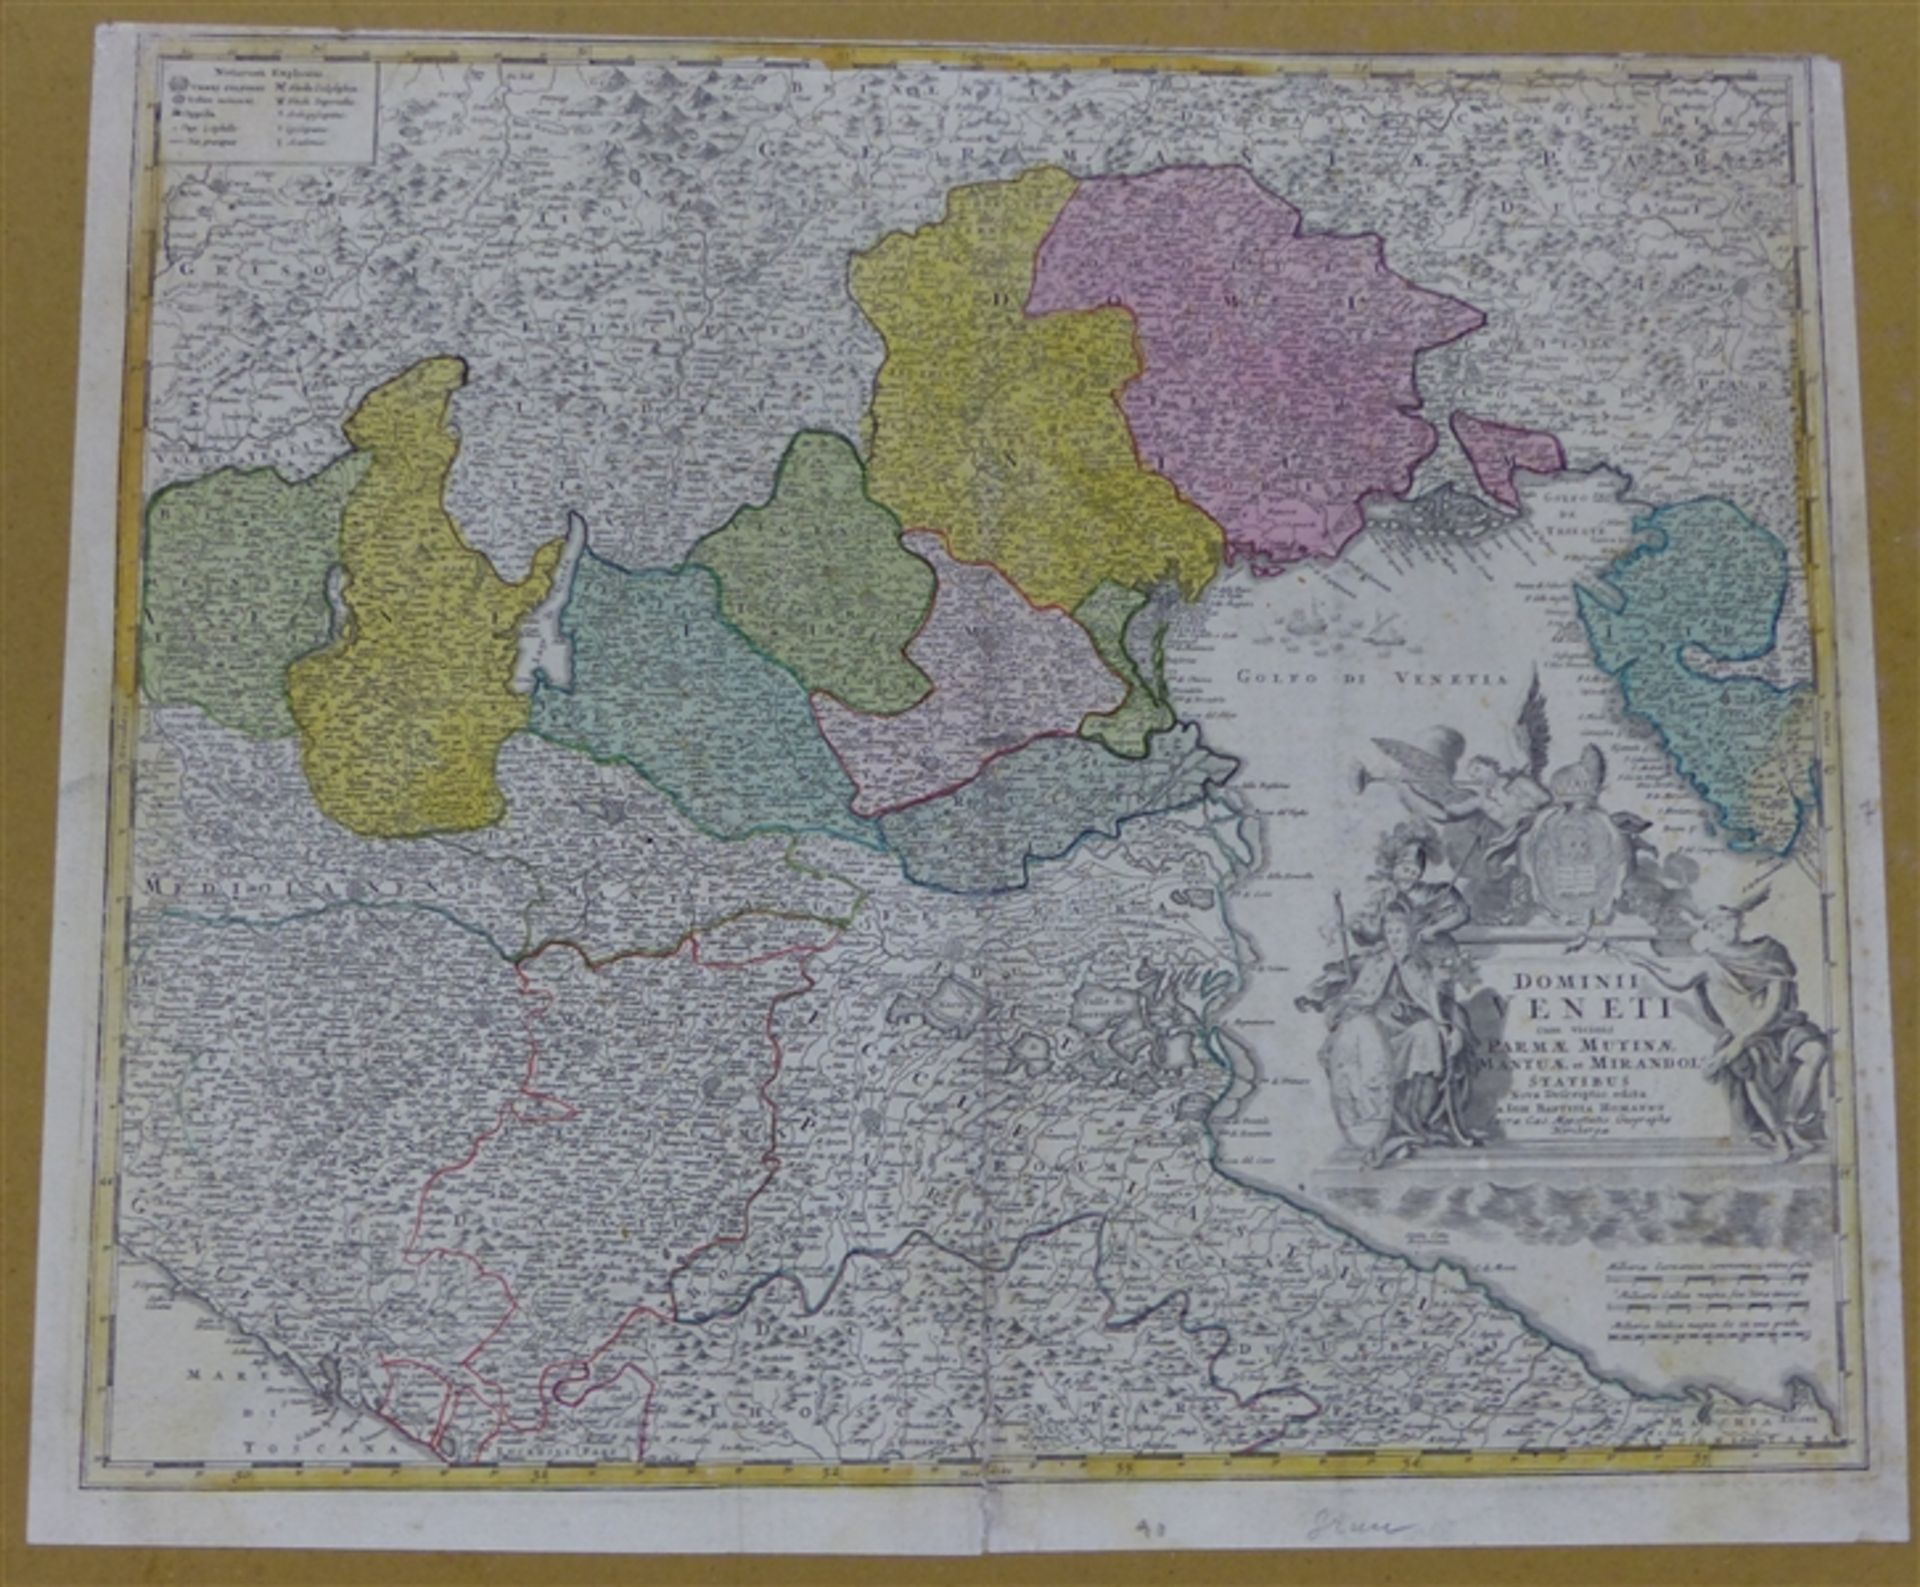 Kupferkarte, um 1800 von J.H. Homann, Nürnberg, Landkarte: "Domini Veneti", Golf von Venedig und